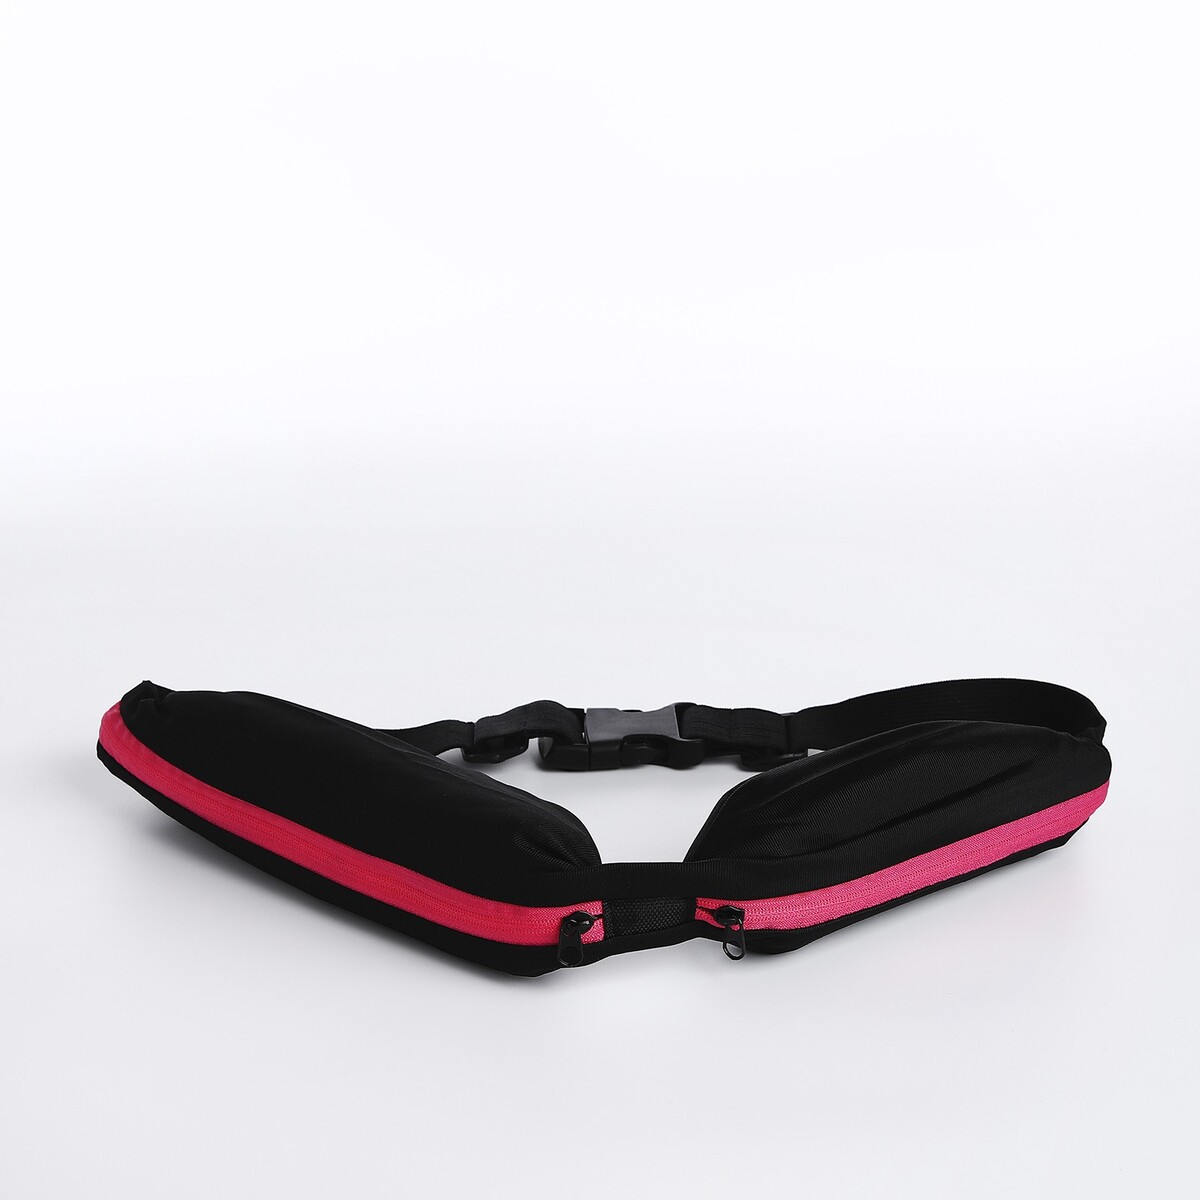 Поясная сумка для бега на молнии, цвет черный/розовый сумка женская поясная для бега rspct your body на молнии фуксия